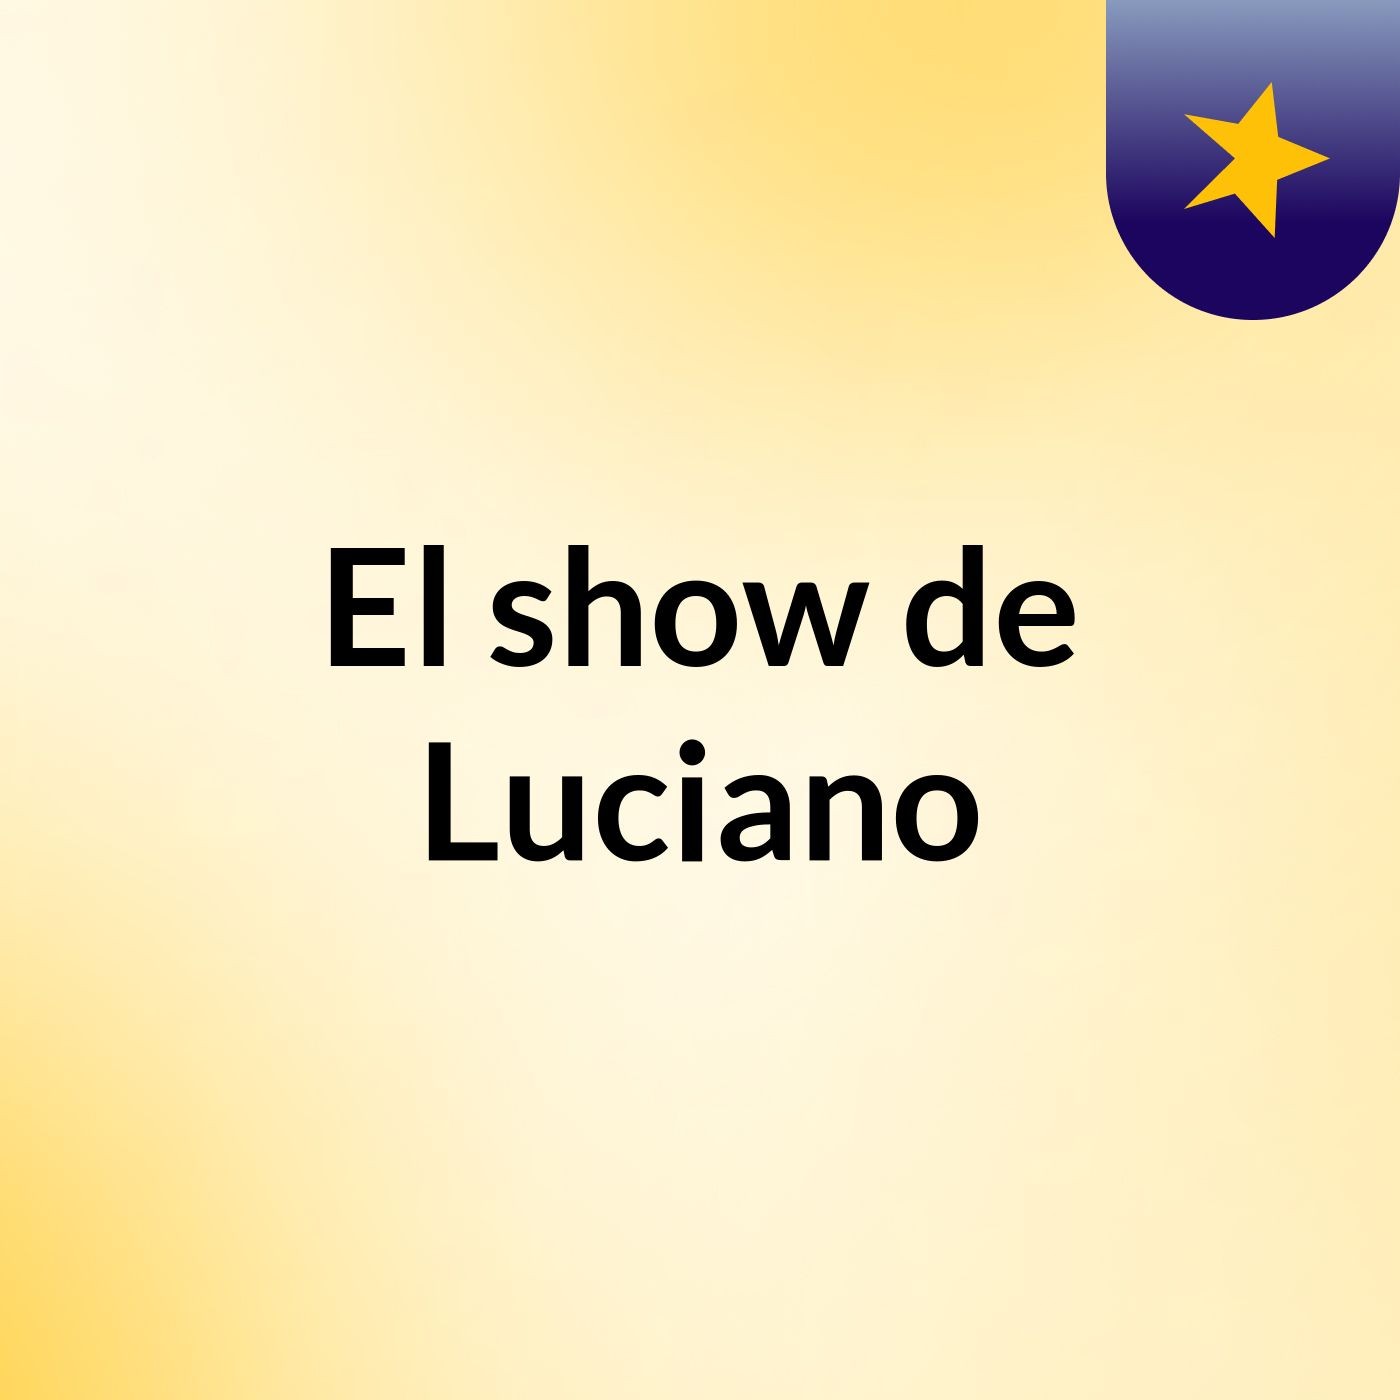 El show de Luciano